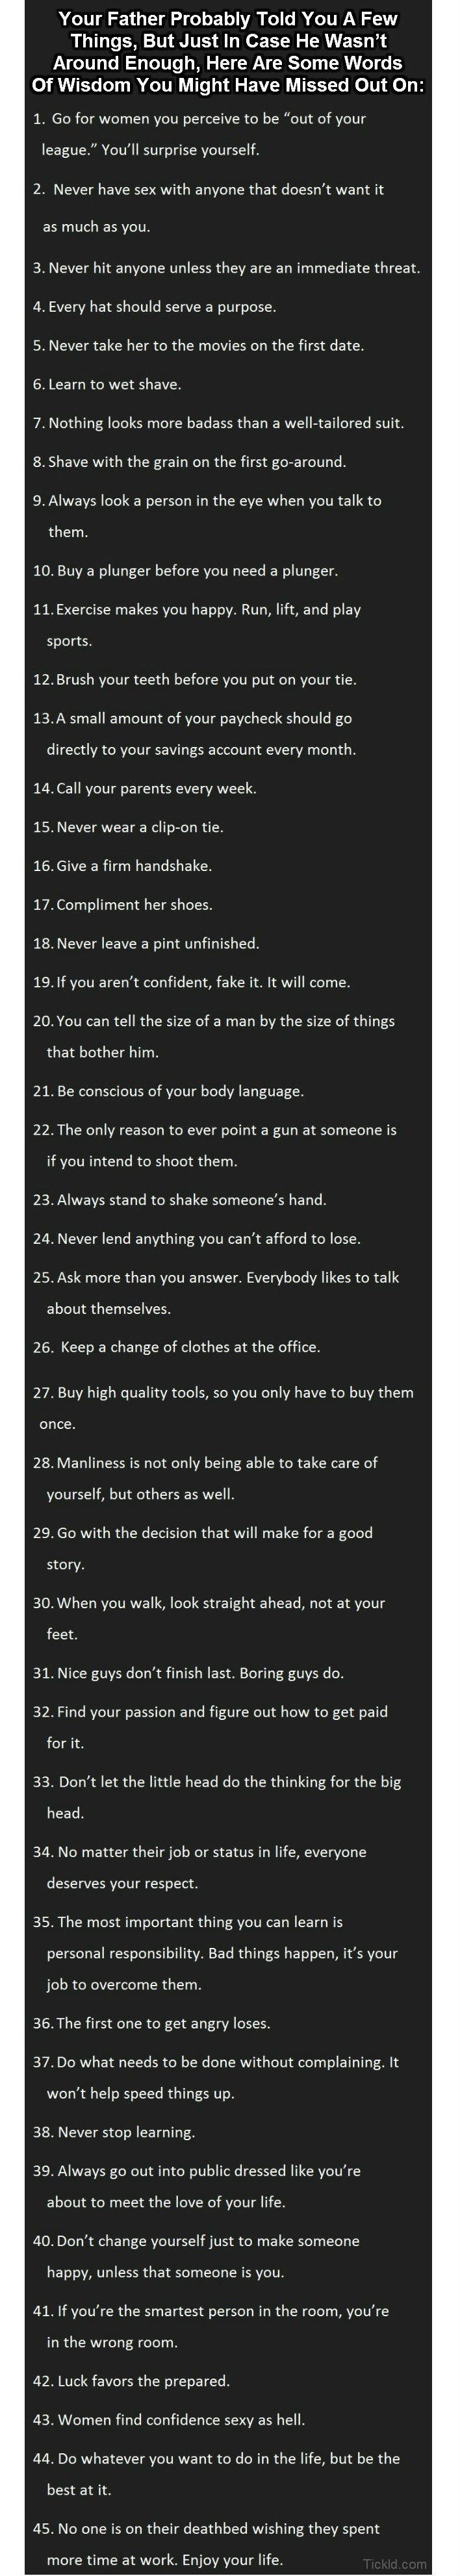 Advice For Men